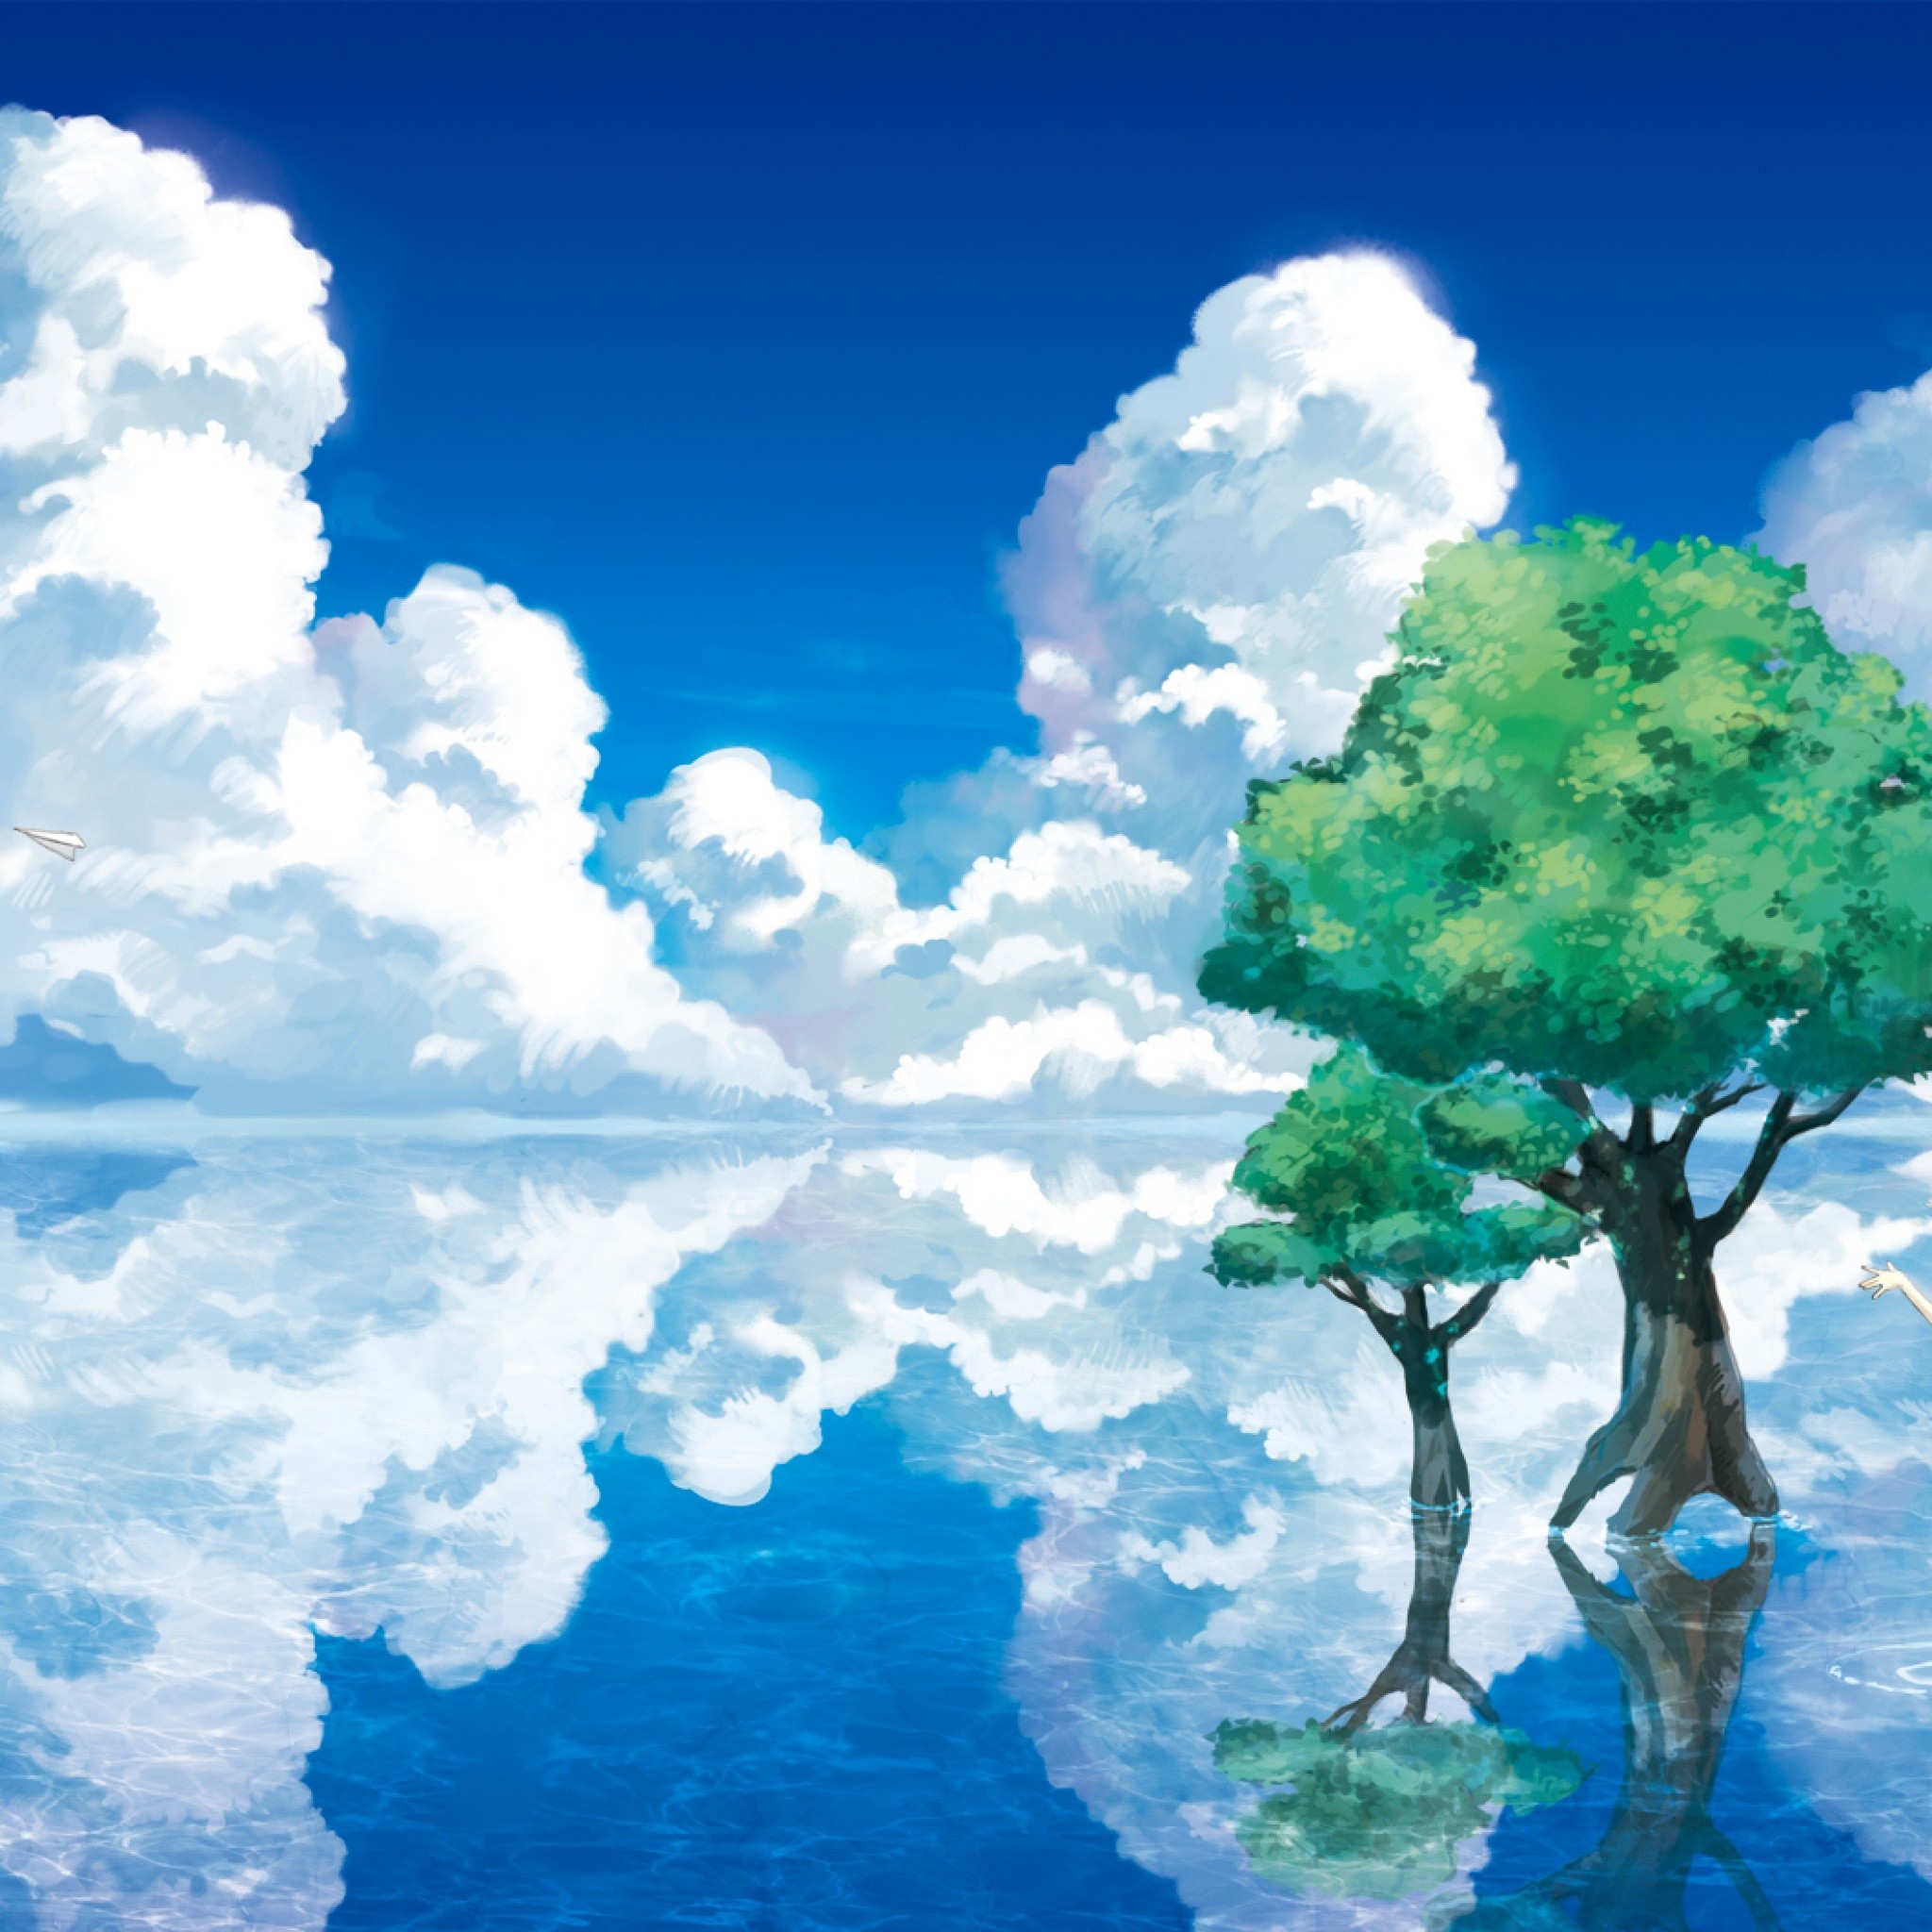 anime wallpaper für ipad,natürliche landschaft,himmel,natur,wolke,wasservorräte